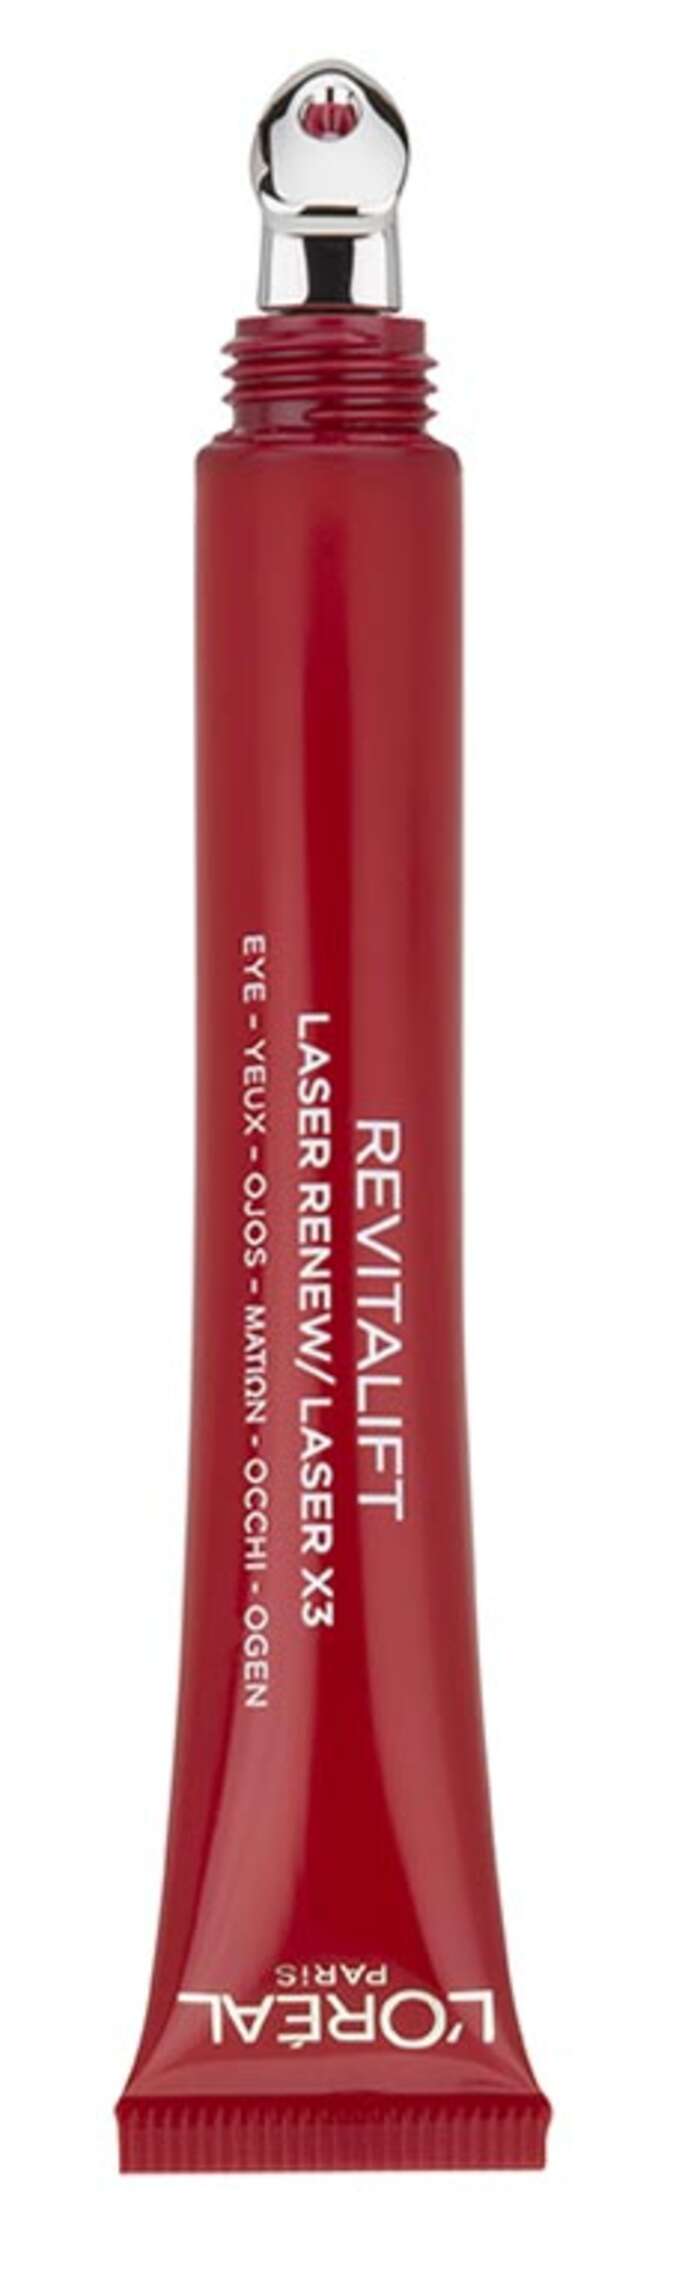 L'Oréal Revitalift Laser Eye Cream 15 ml 2